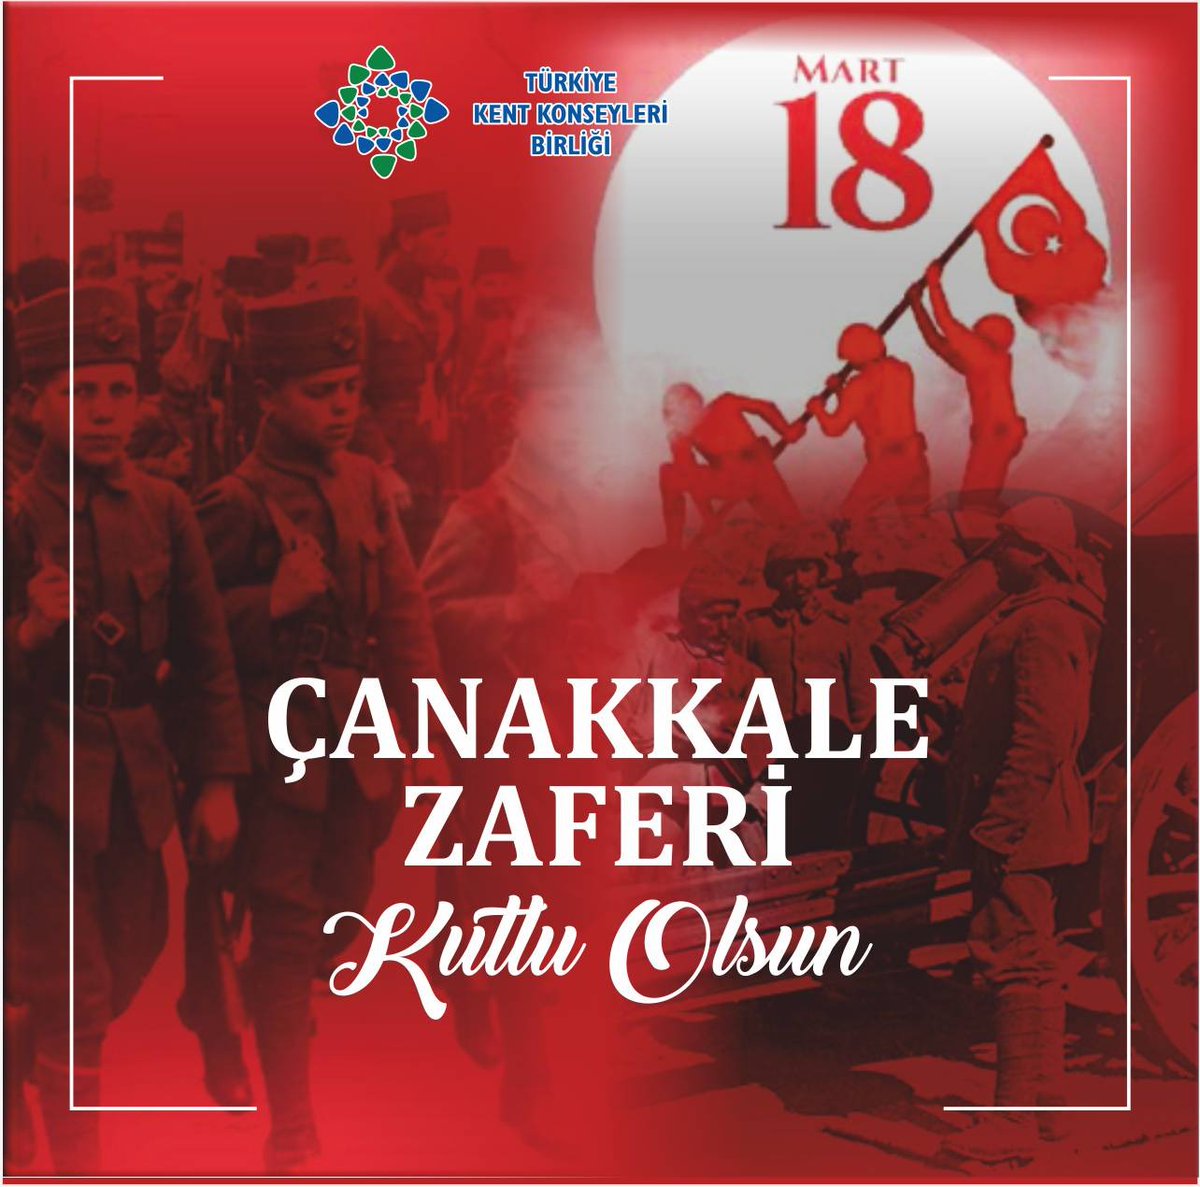 18 Mart Çanakkale Zaferi’nin 109. yıl dönümünde, başta Gazi Mustafa Kemal Atatürk ve silah arkadaşları olmak üzere vatan topraklarını geçilmez kılan bütün şehitlerimizi saygı, rahmet ve minnetle anıyoruz. #18martcanakkalezaferi